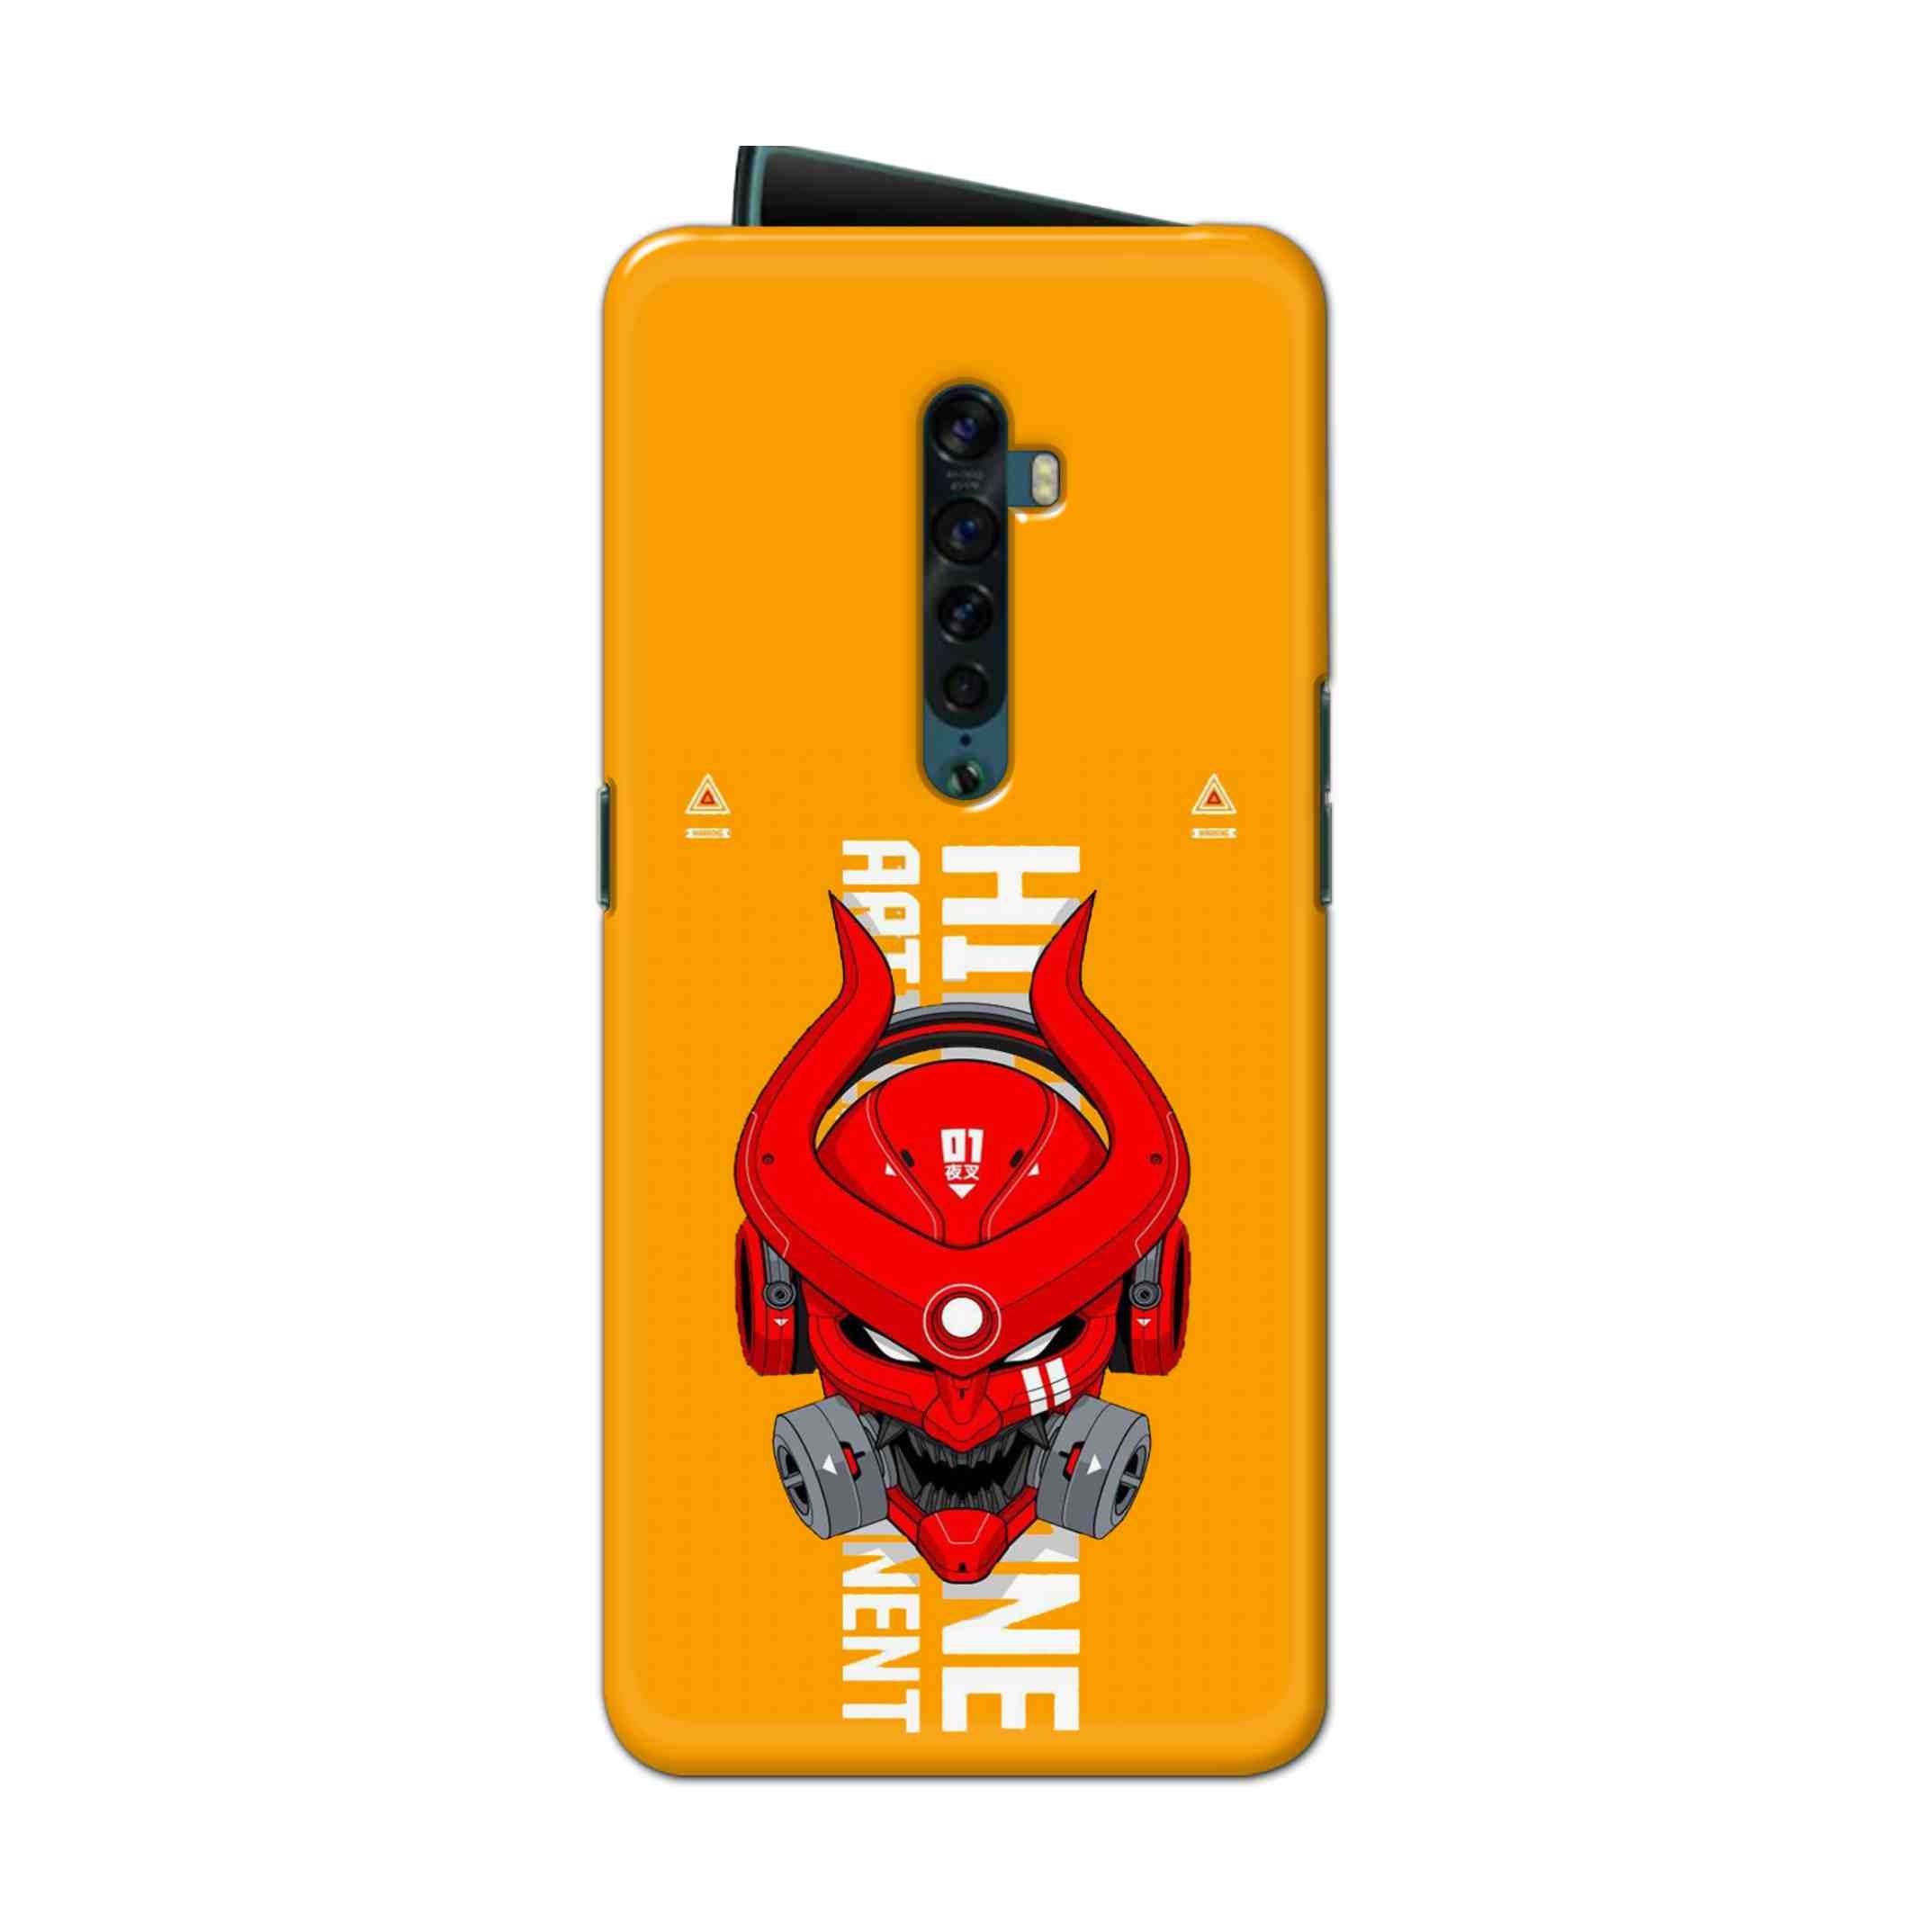 Buy Bull Skull Hard Back Mobile Phone Case Cover For Oppo Reno 2 Online